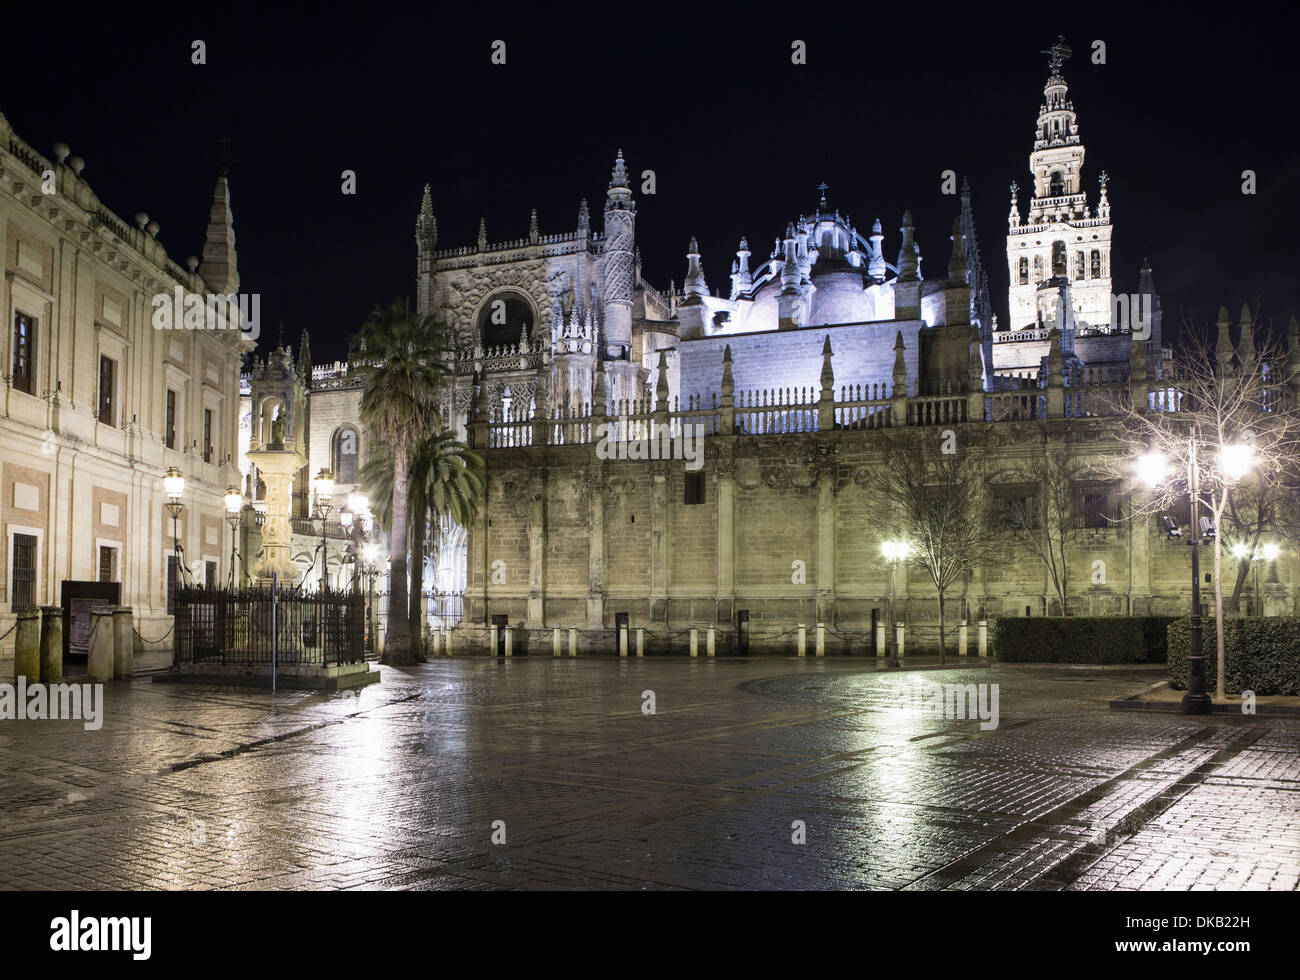 La nuit, la cathédrale de Séville, Espagne Banque D'Images